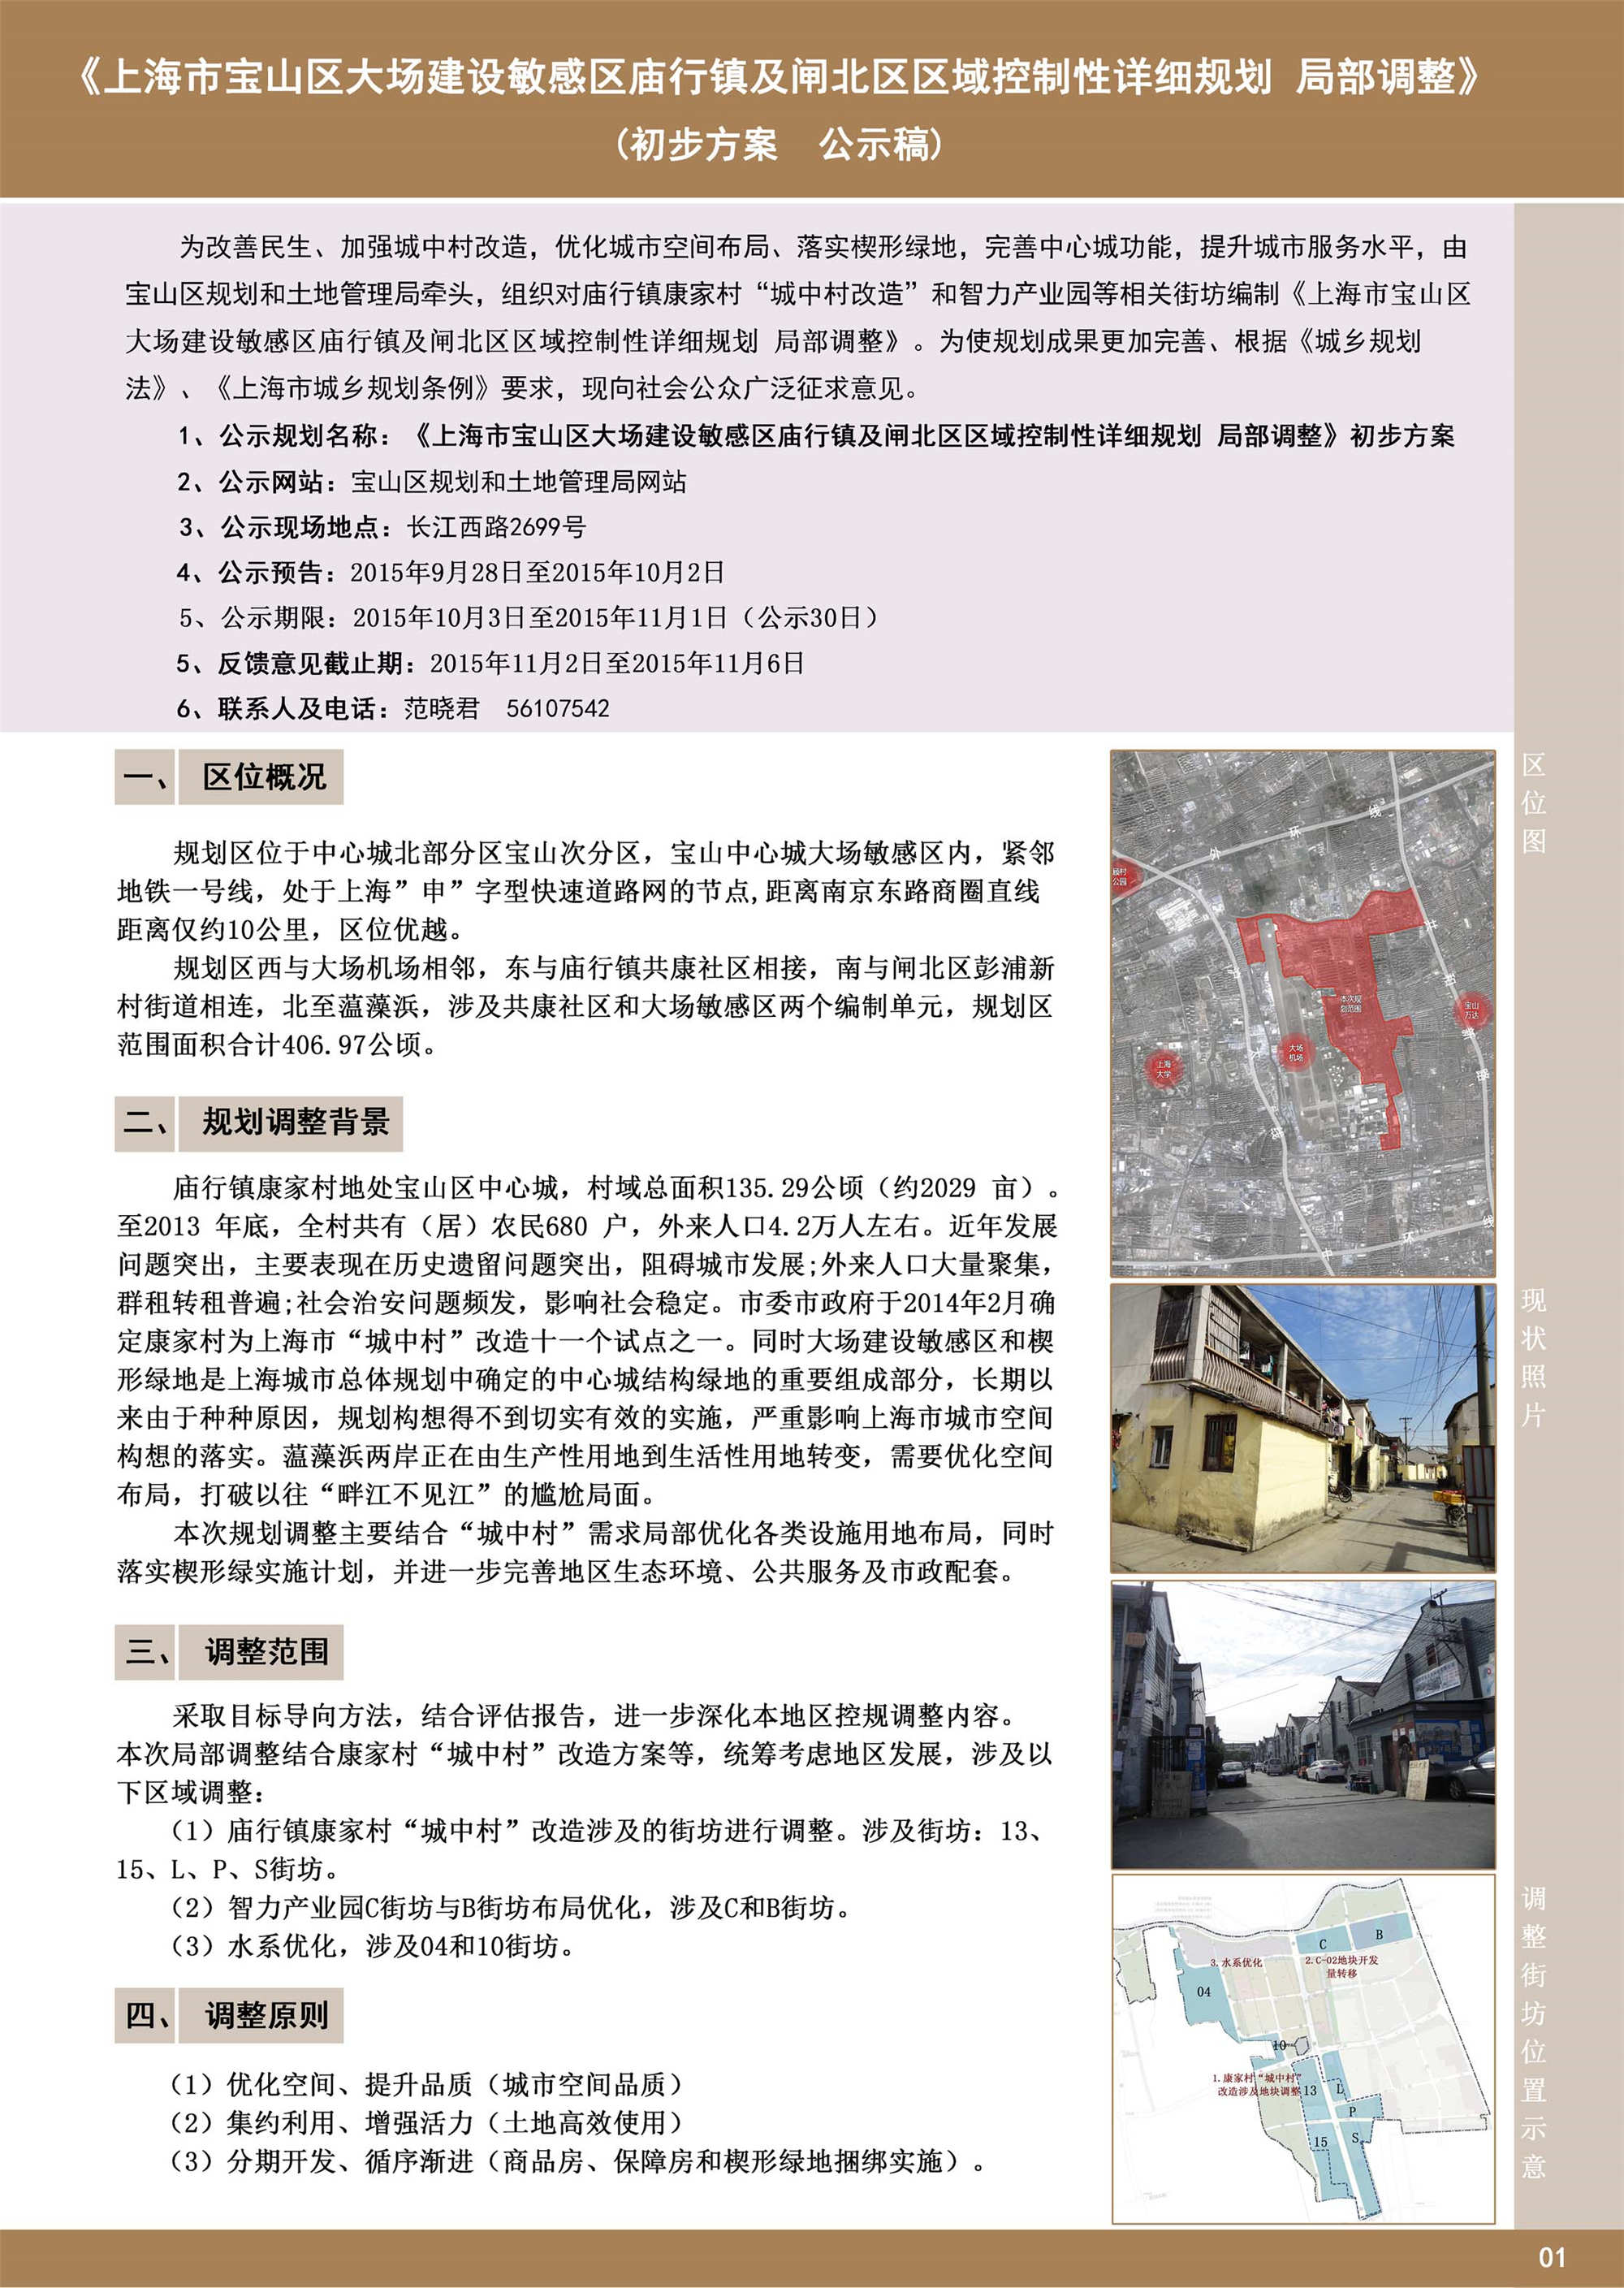 2019上海体育场_旅游攻略_门票_地址_游记点评,上海旅游玩乐推荐 - 去哪儿攻略社区